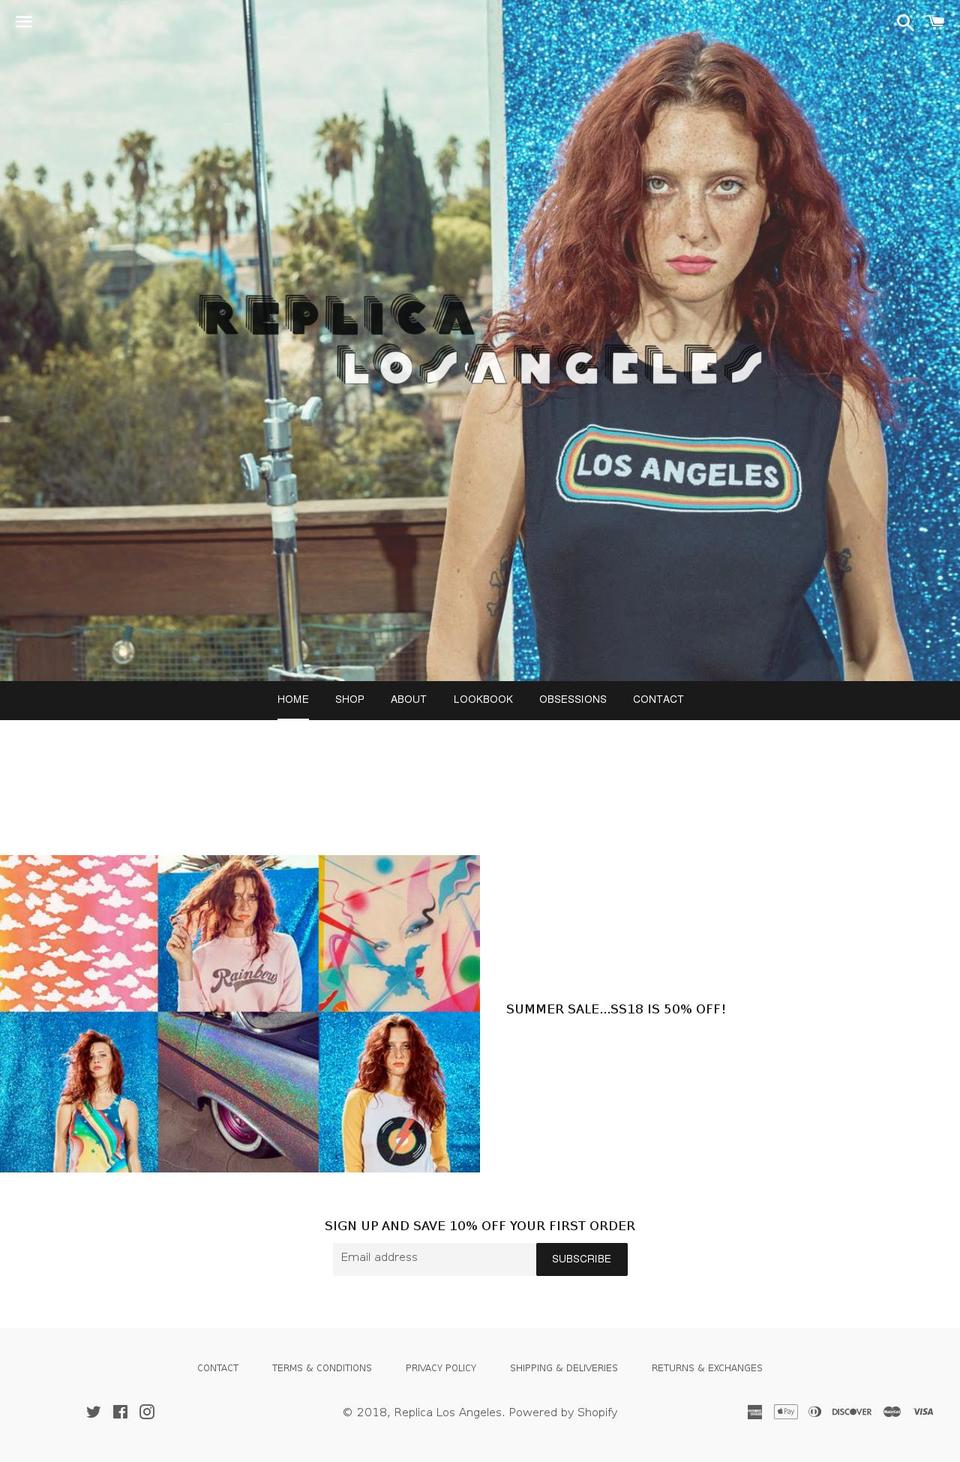 replicalosangeles.com shopify website screenshot